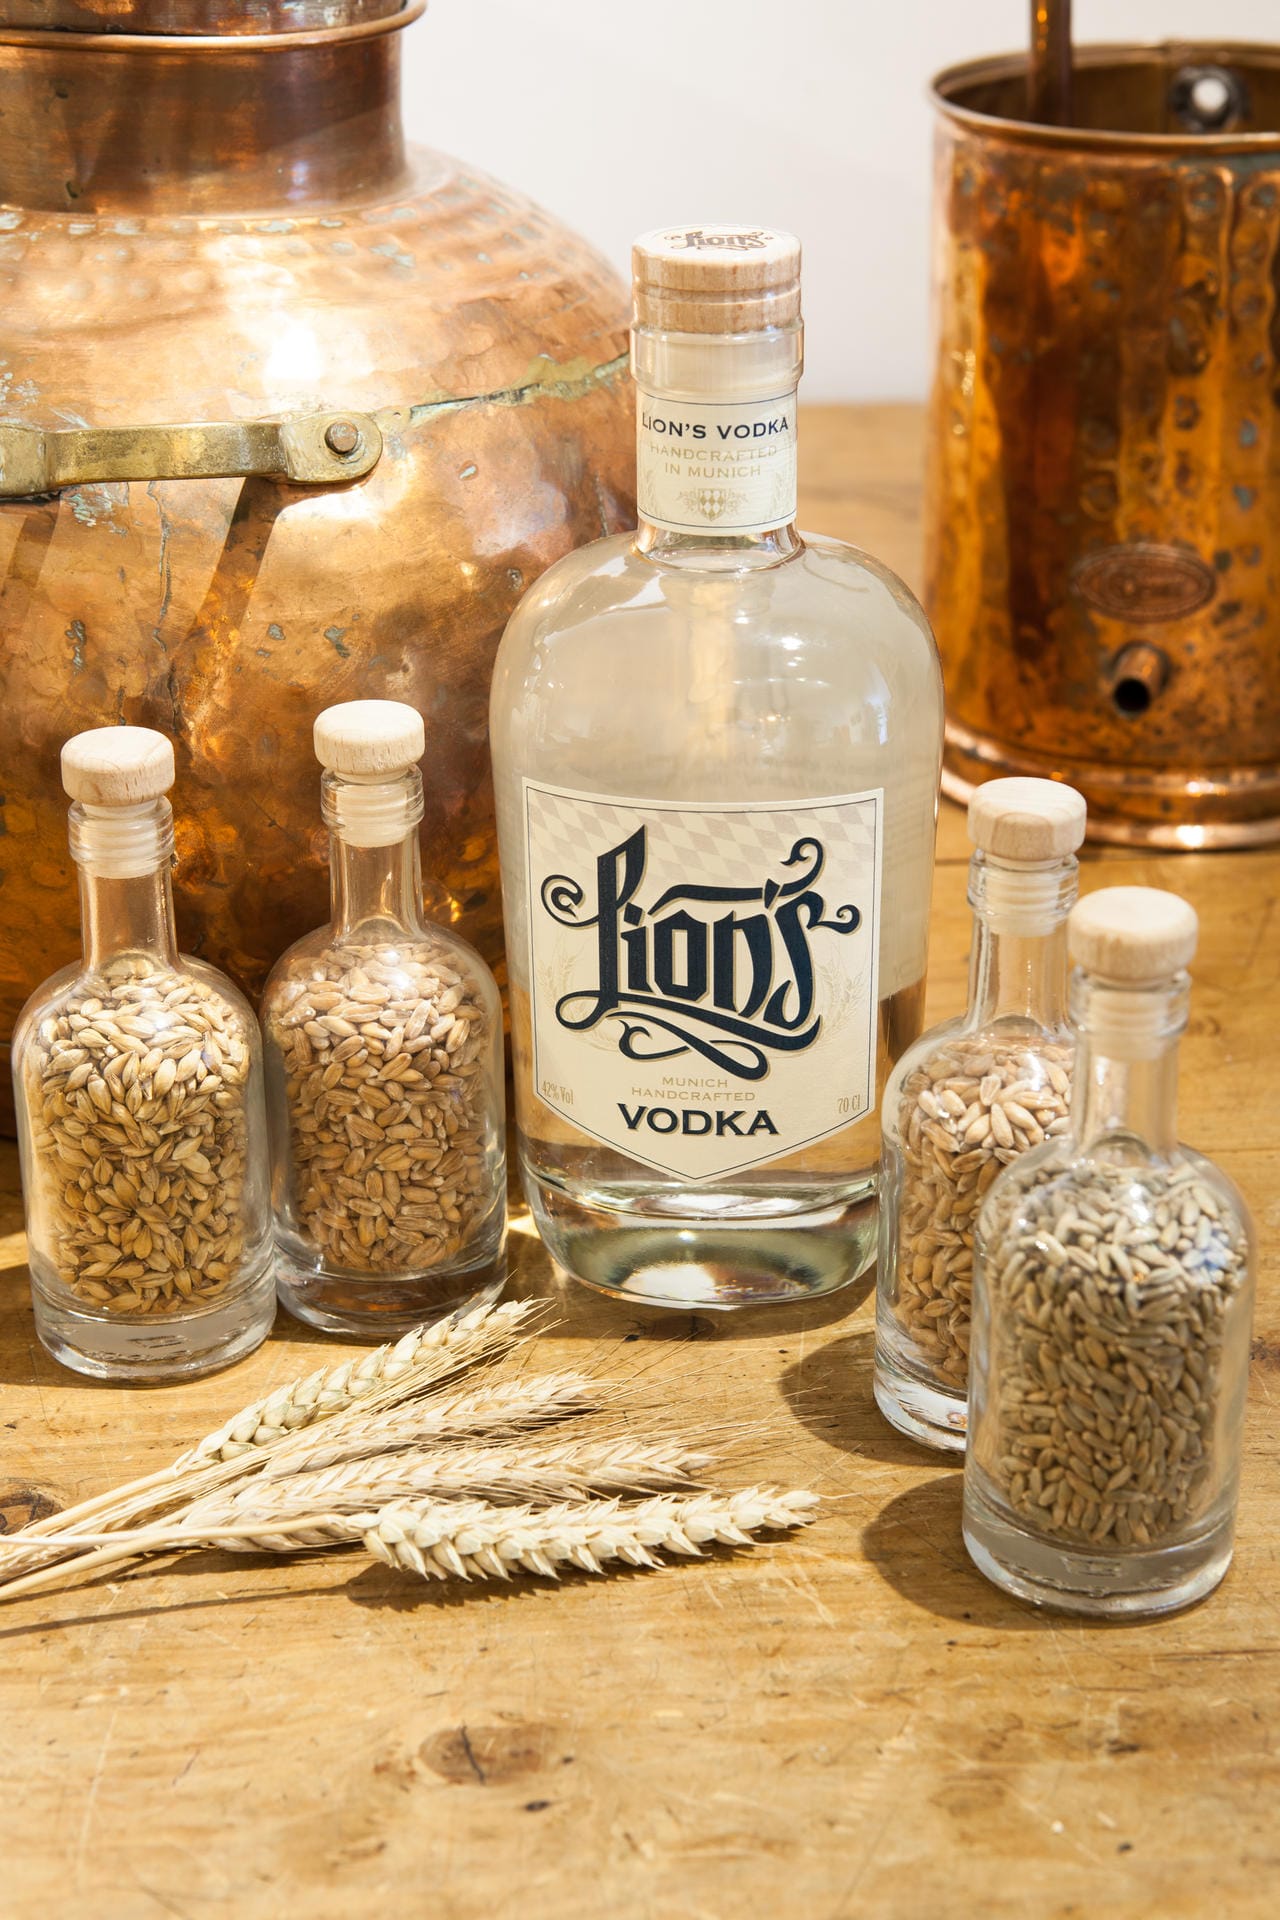 Aus der gleichen Münchner Destillerie stammt auch der "Lion's"-Wodka. Von Hand produziert und mit süßfruchtigem Getreidearoma kostet der Liter des edlen Stoffes rund 27 Euro.